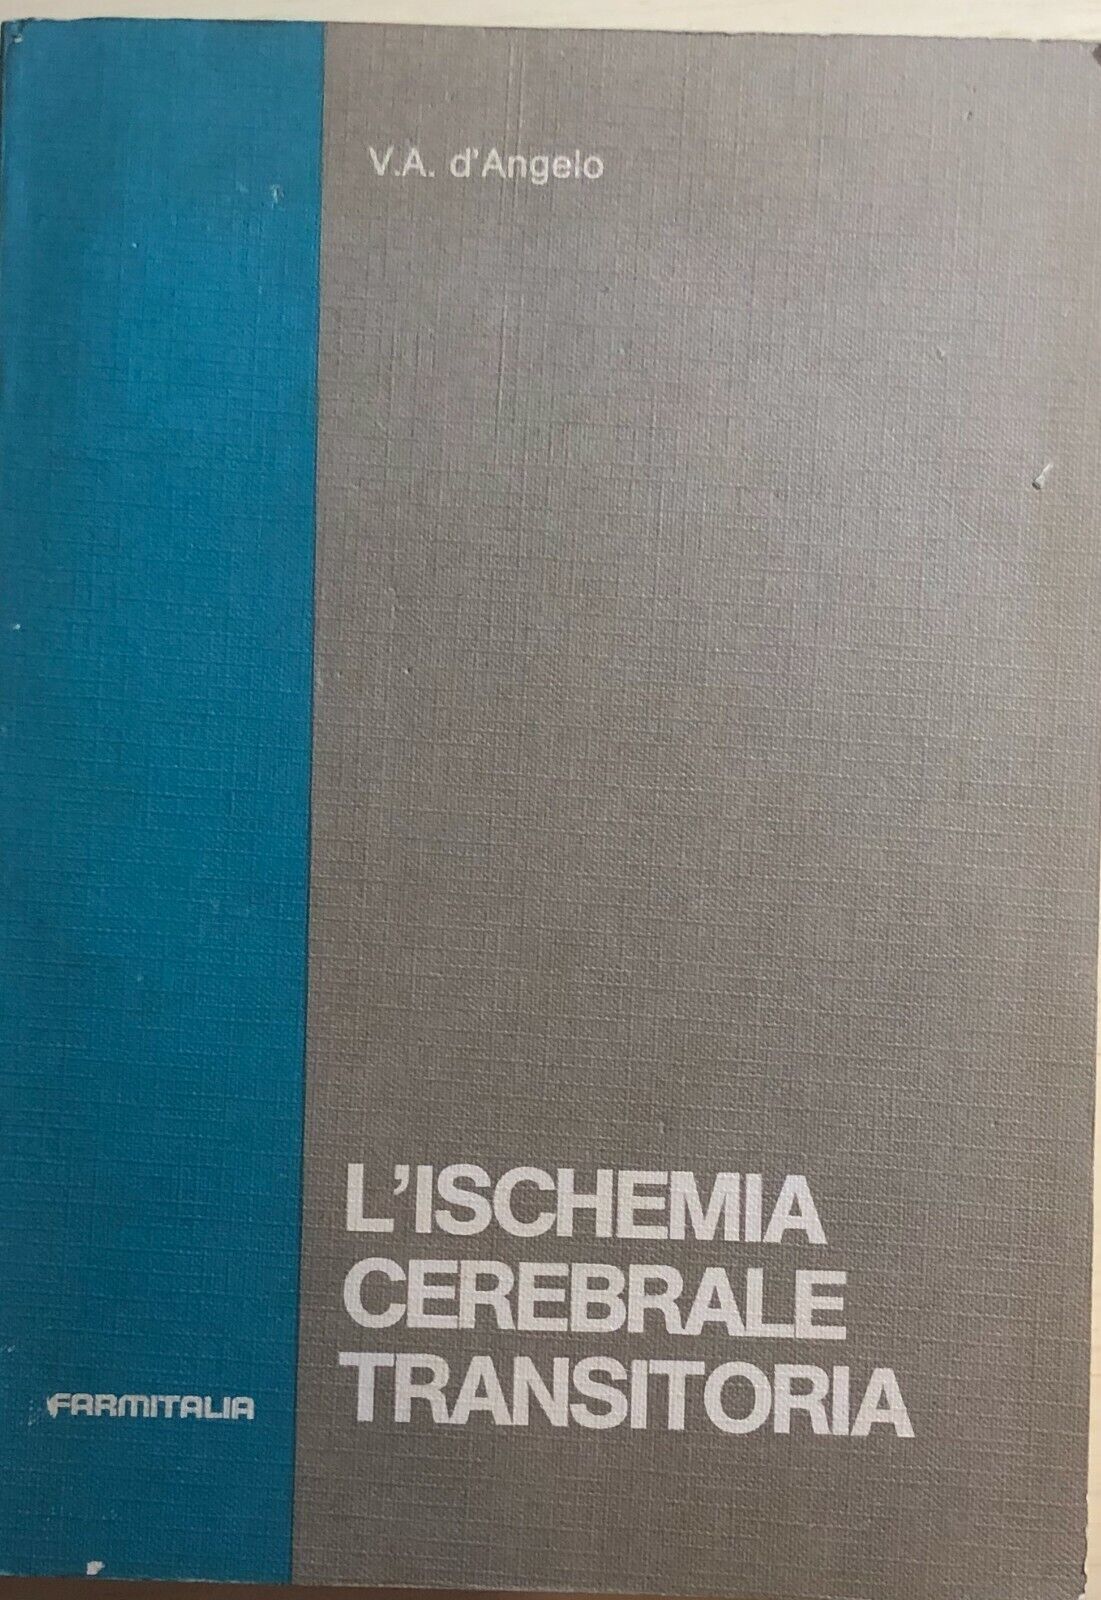 L'ischemia cerebrale transitoria di V.a. d'Angelo, 1980, Farmitalia